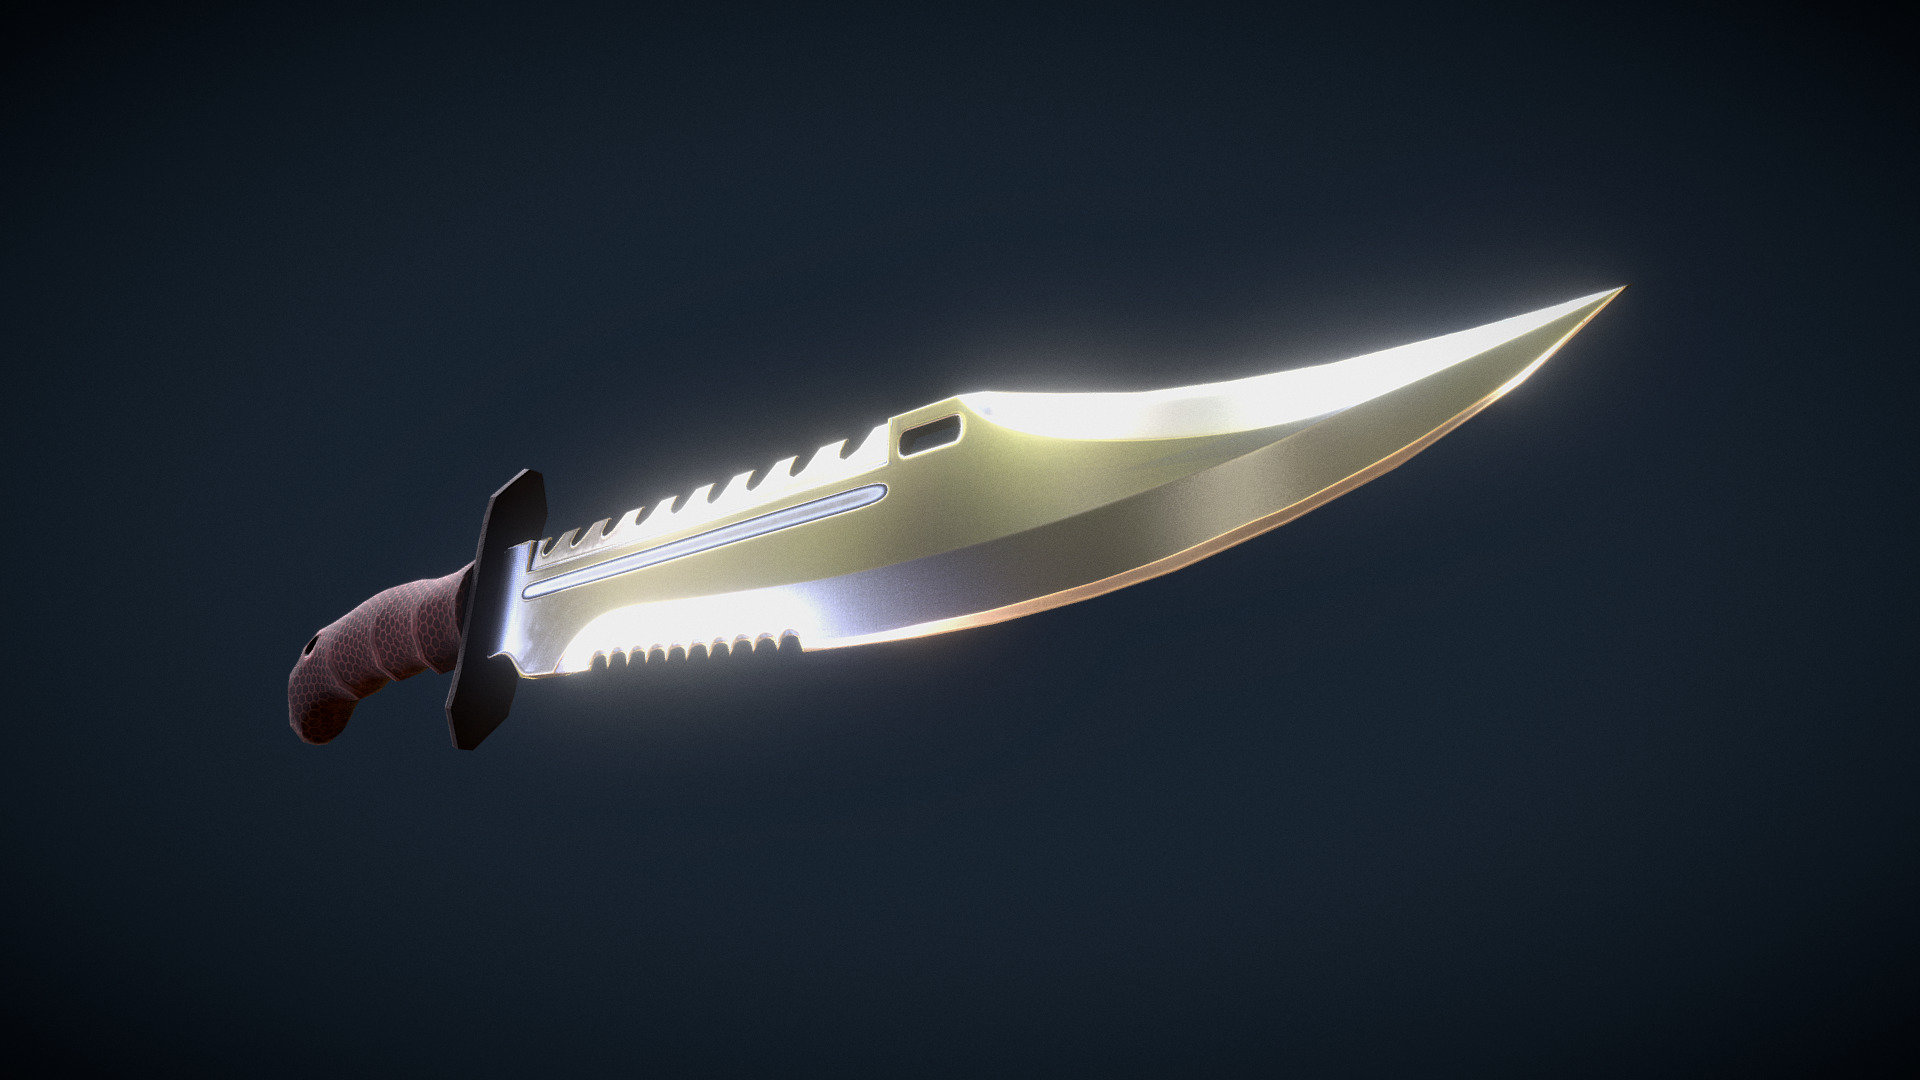 Knife - 3D model by Szarak (@szara90) 3d model